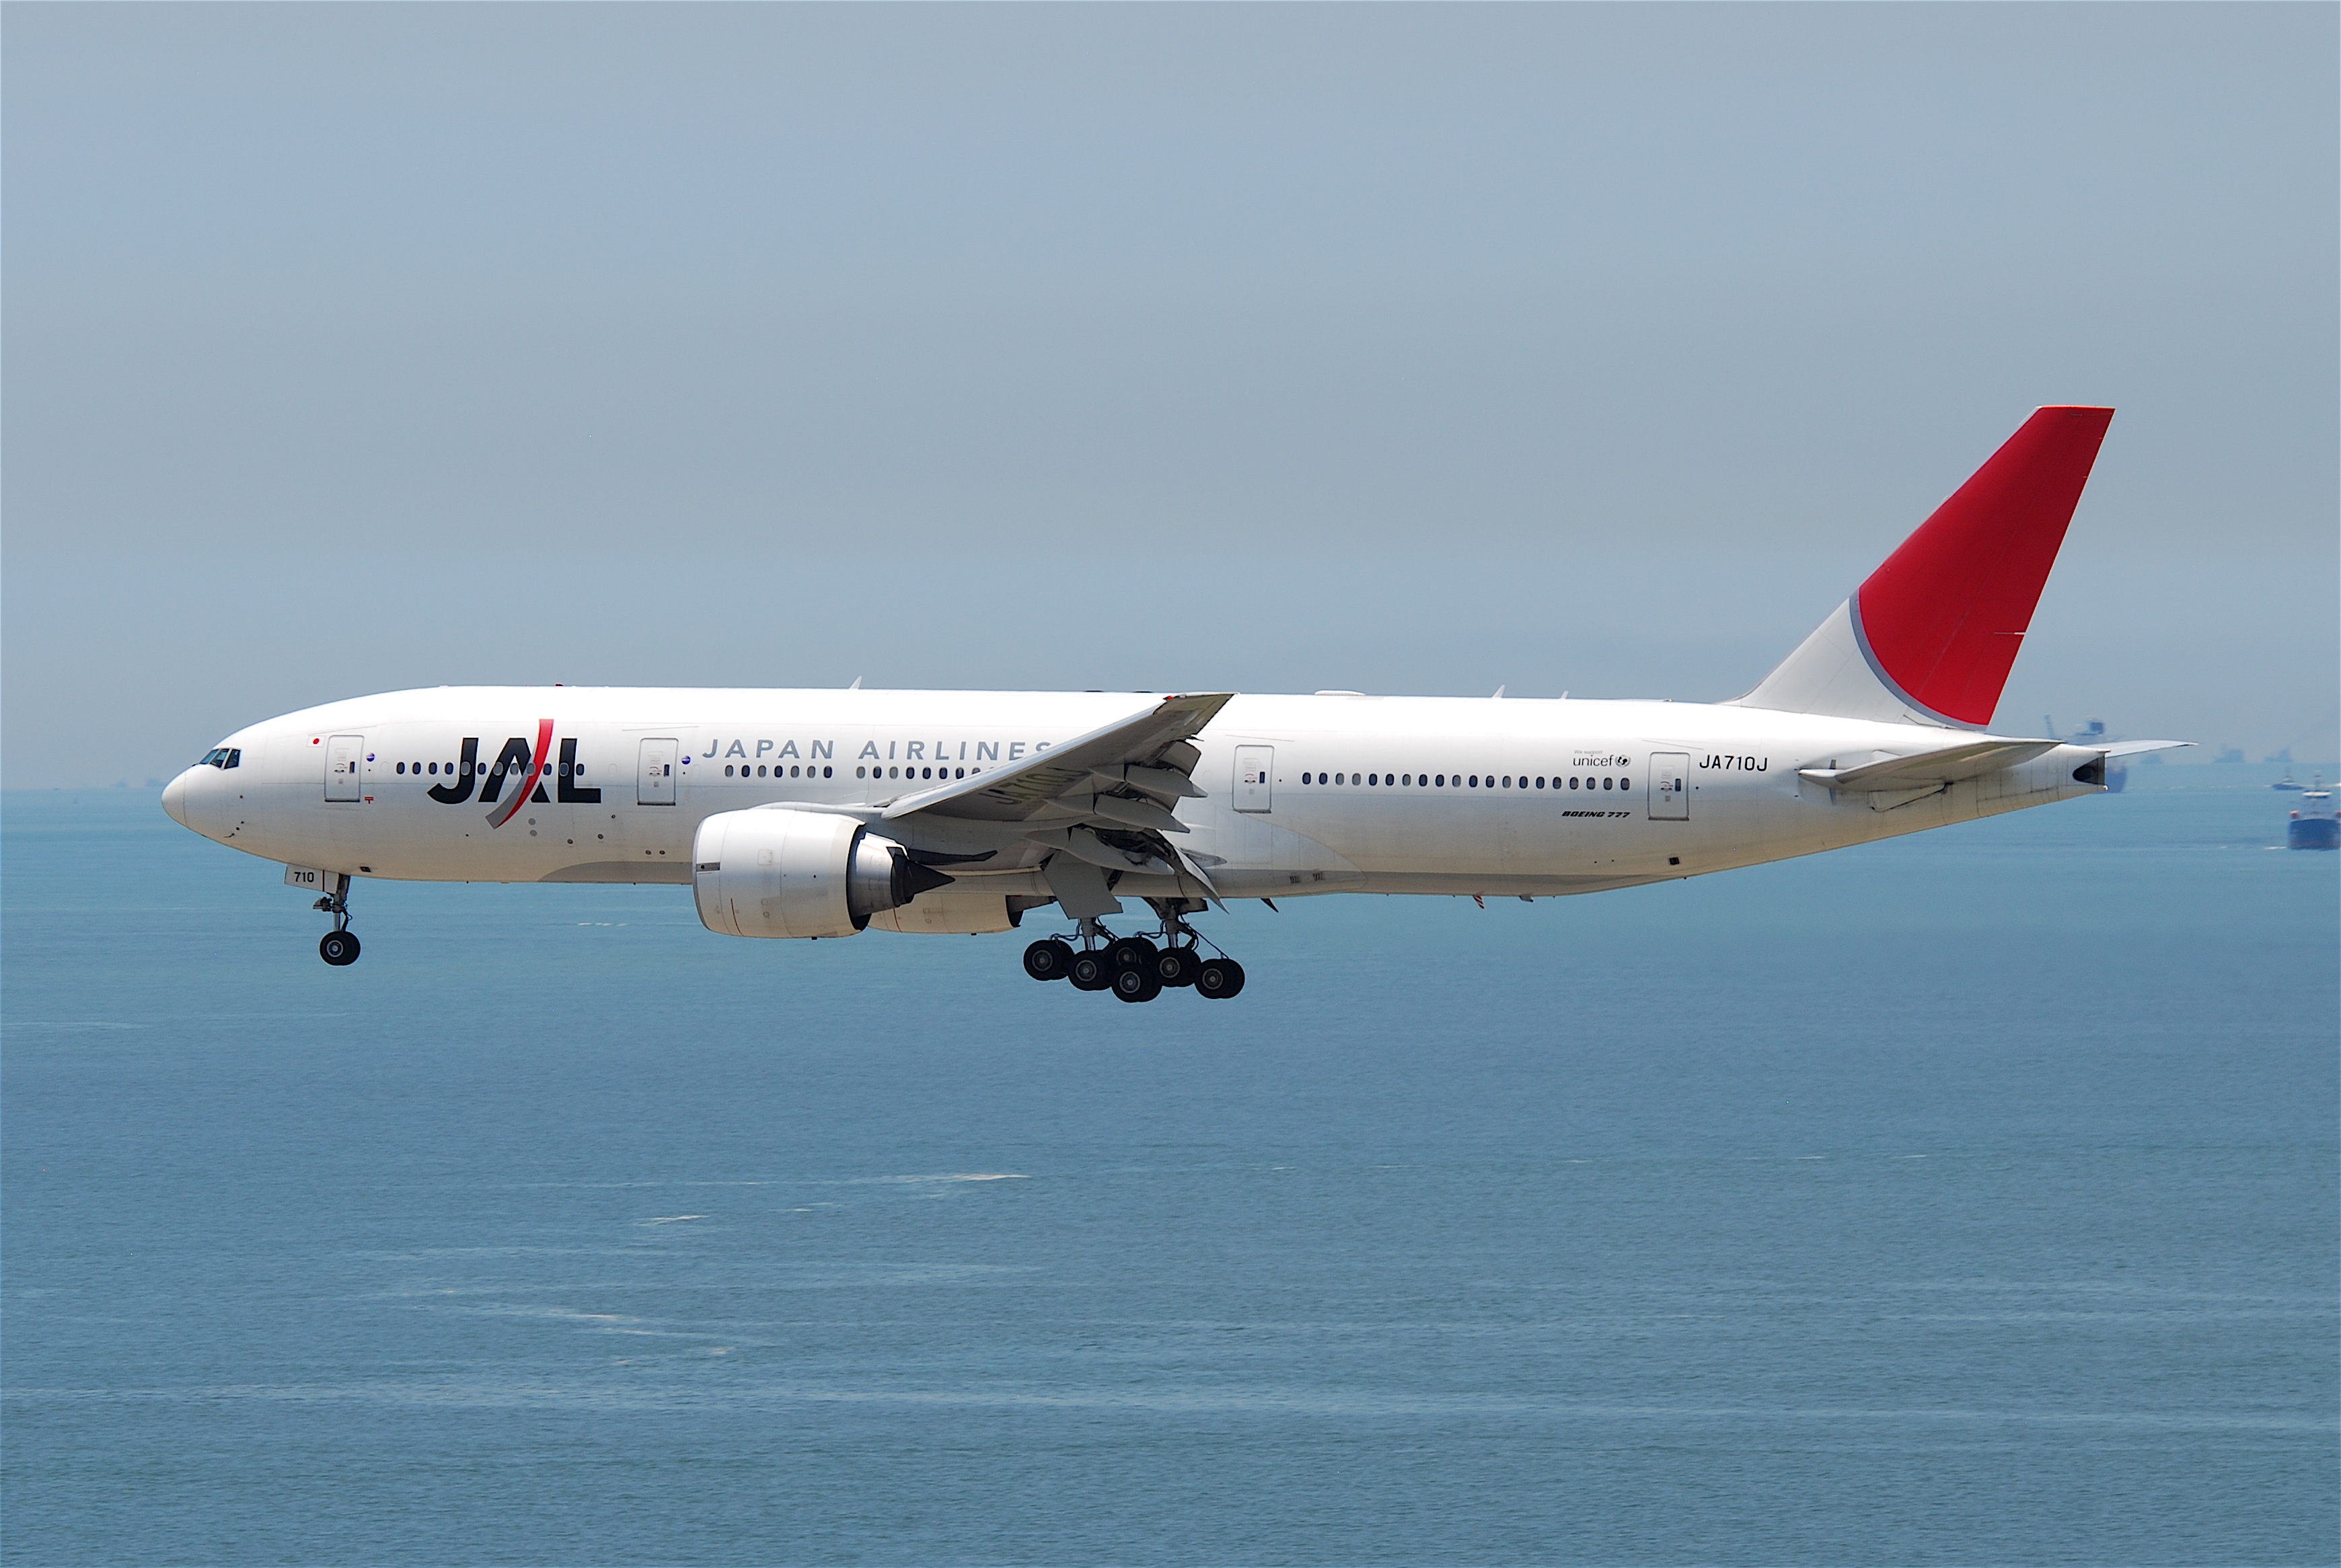 File:JAL Japan Airlines Boeing 777-200ER; JA710J@HKG615lm 